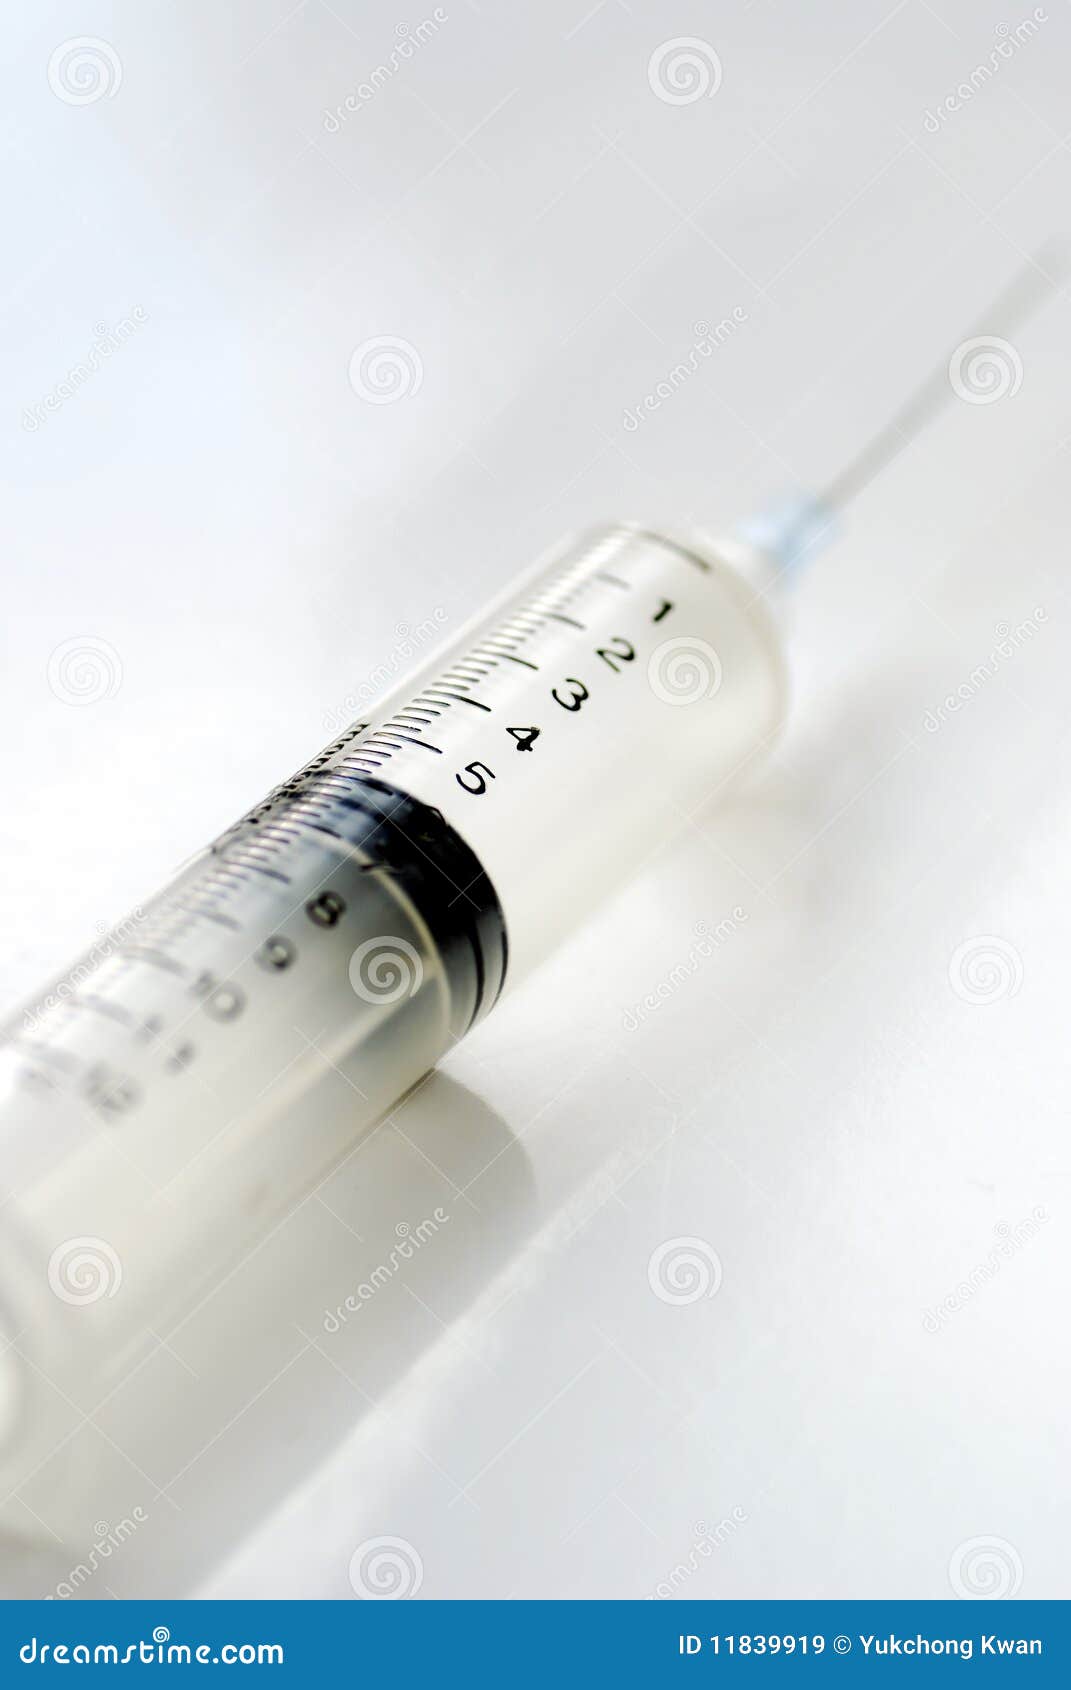 syringe with hypodermic needle  on white